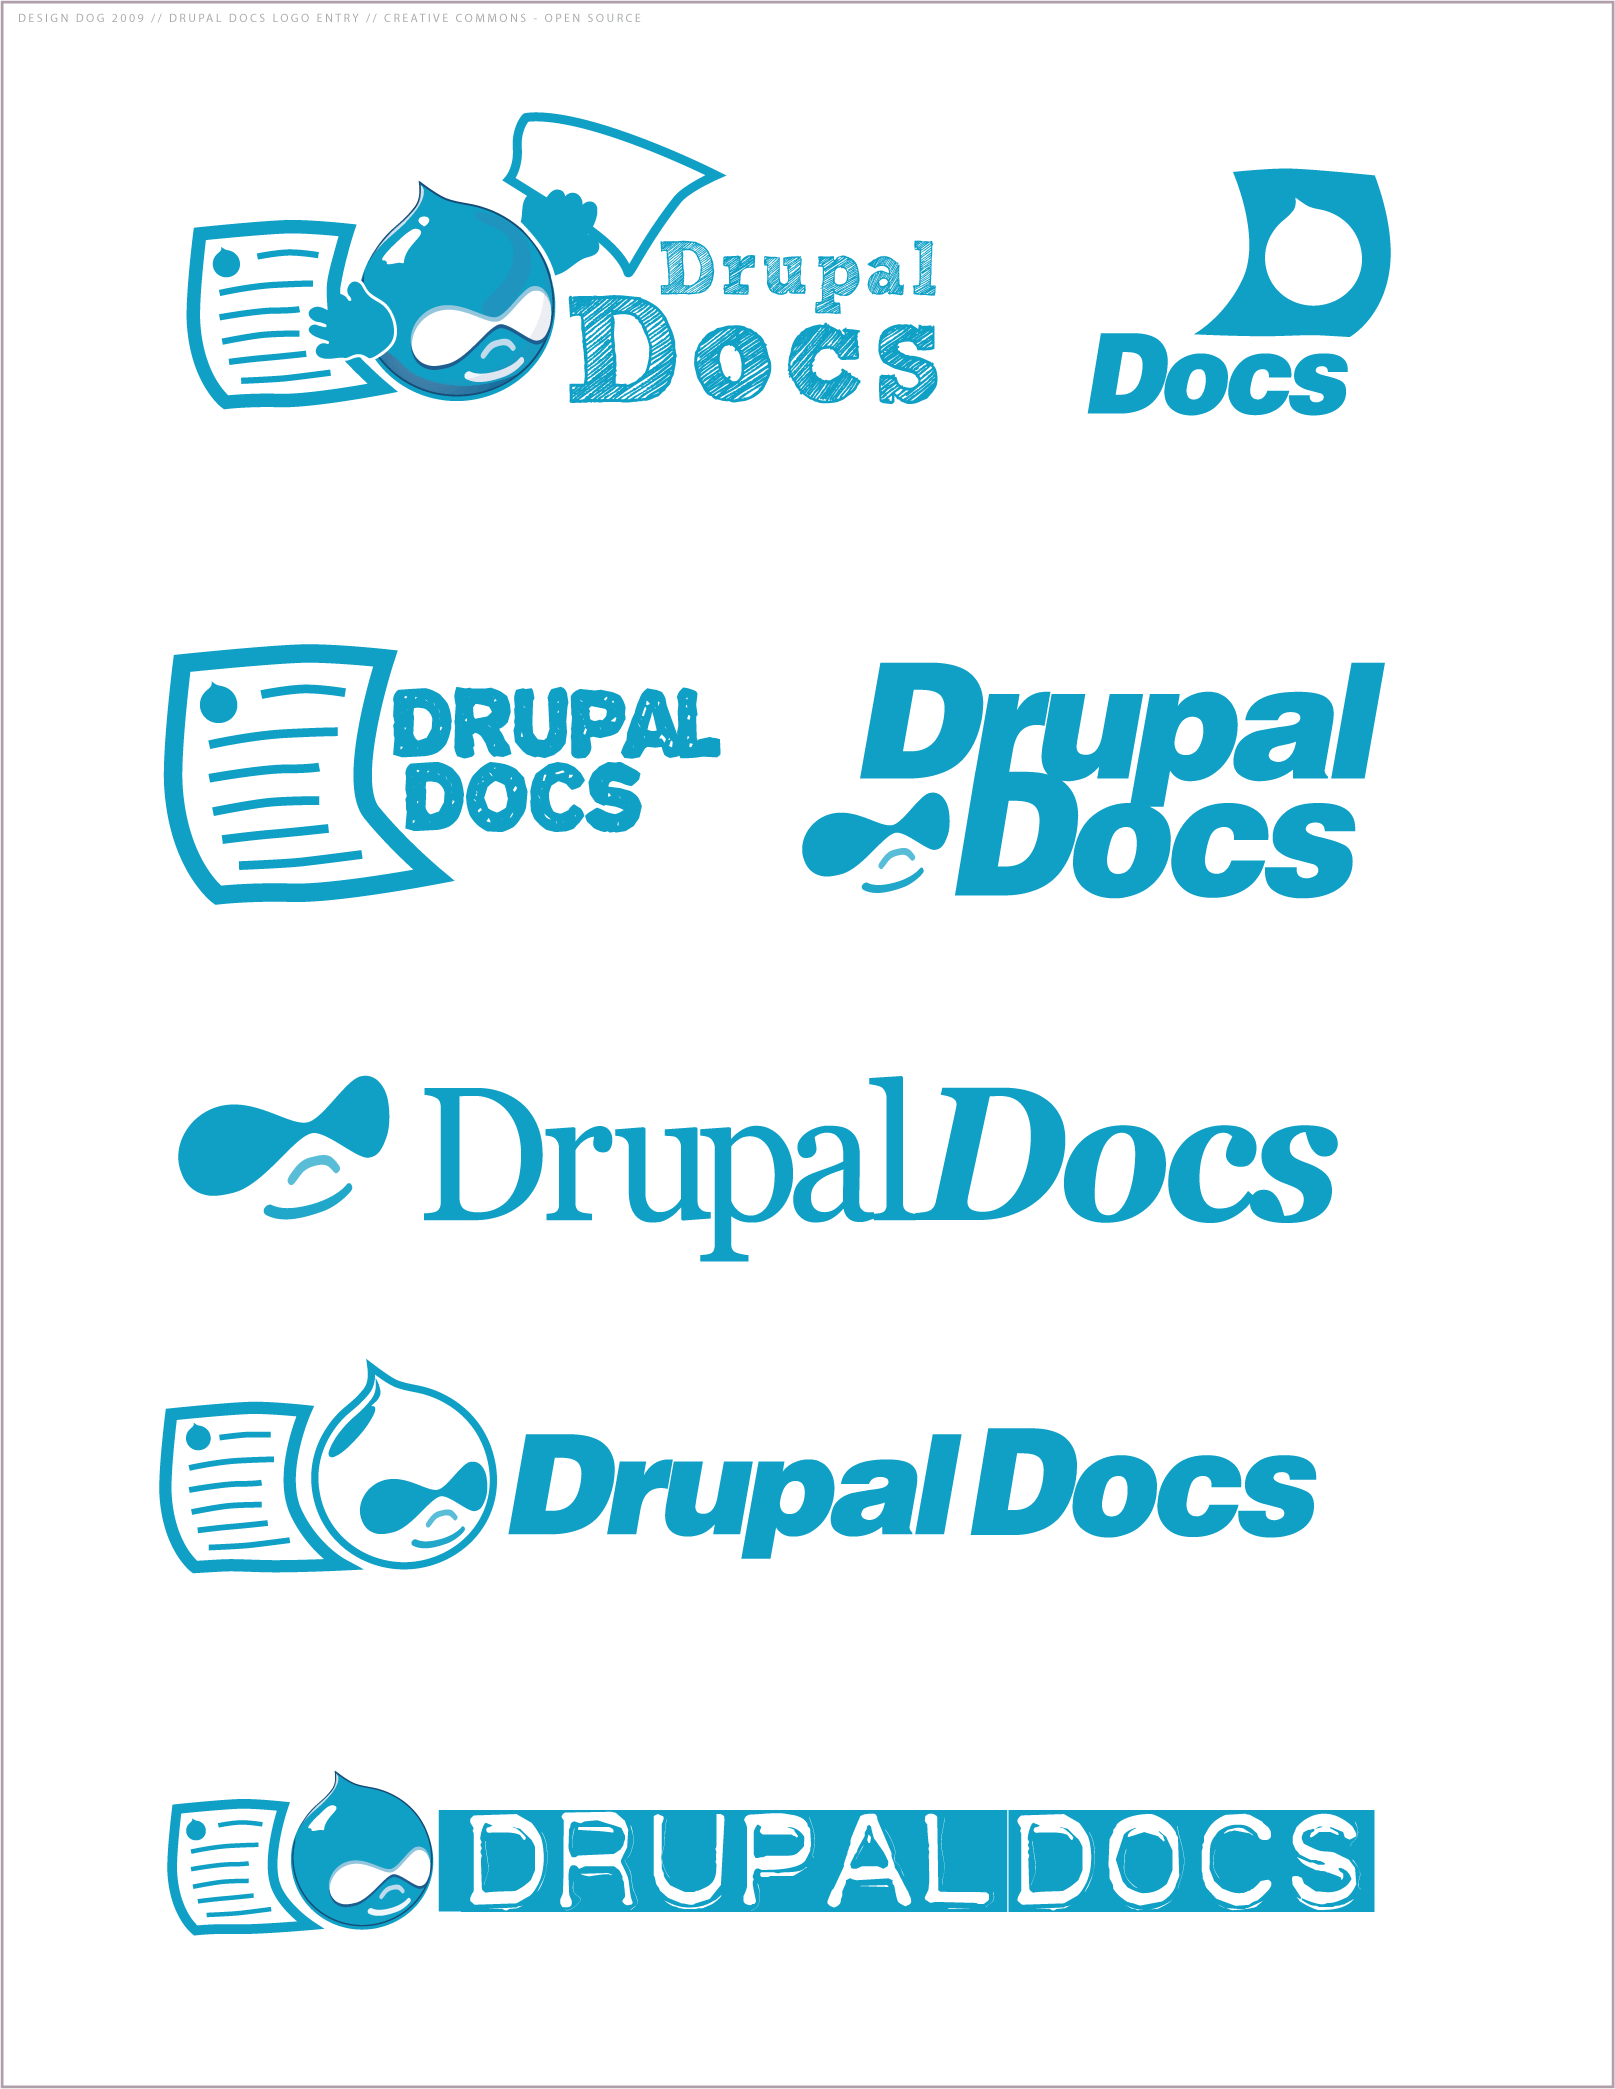 Documentation Logo - Drupal Documentation Logos | Drupal.org